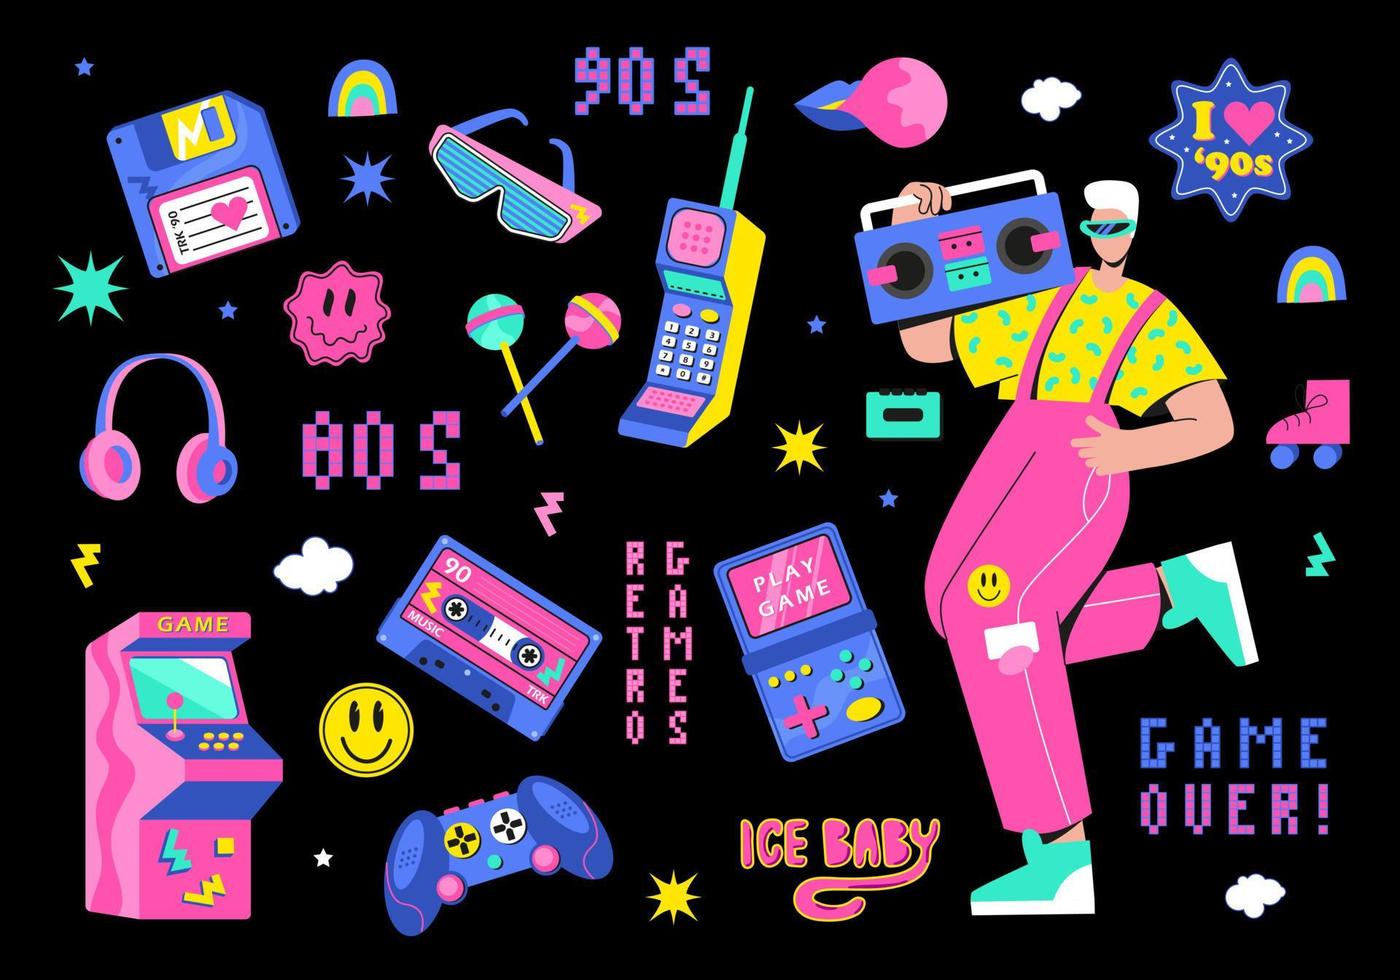 en stor retro uppsättning av de 90-talet, 80-tal. kille dans och spel, kassett, arkanoid, joystick, set-top låda, hörlurar, pixlar vektor